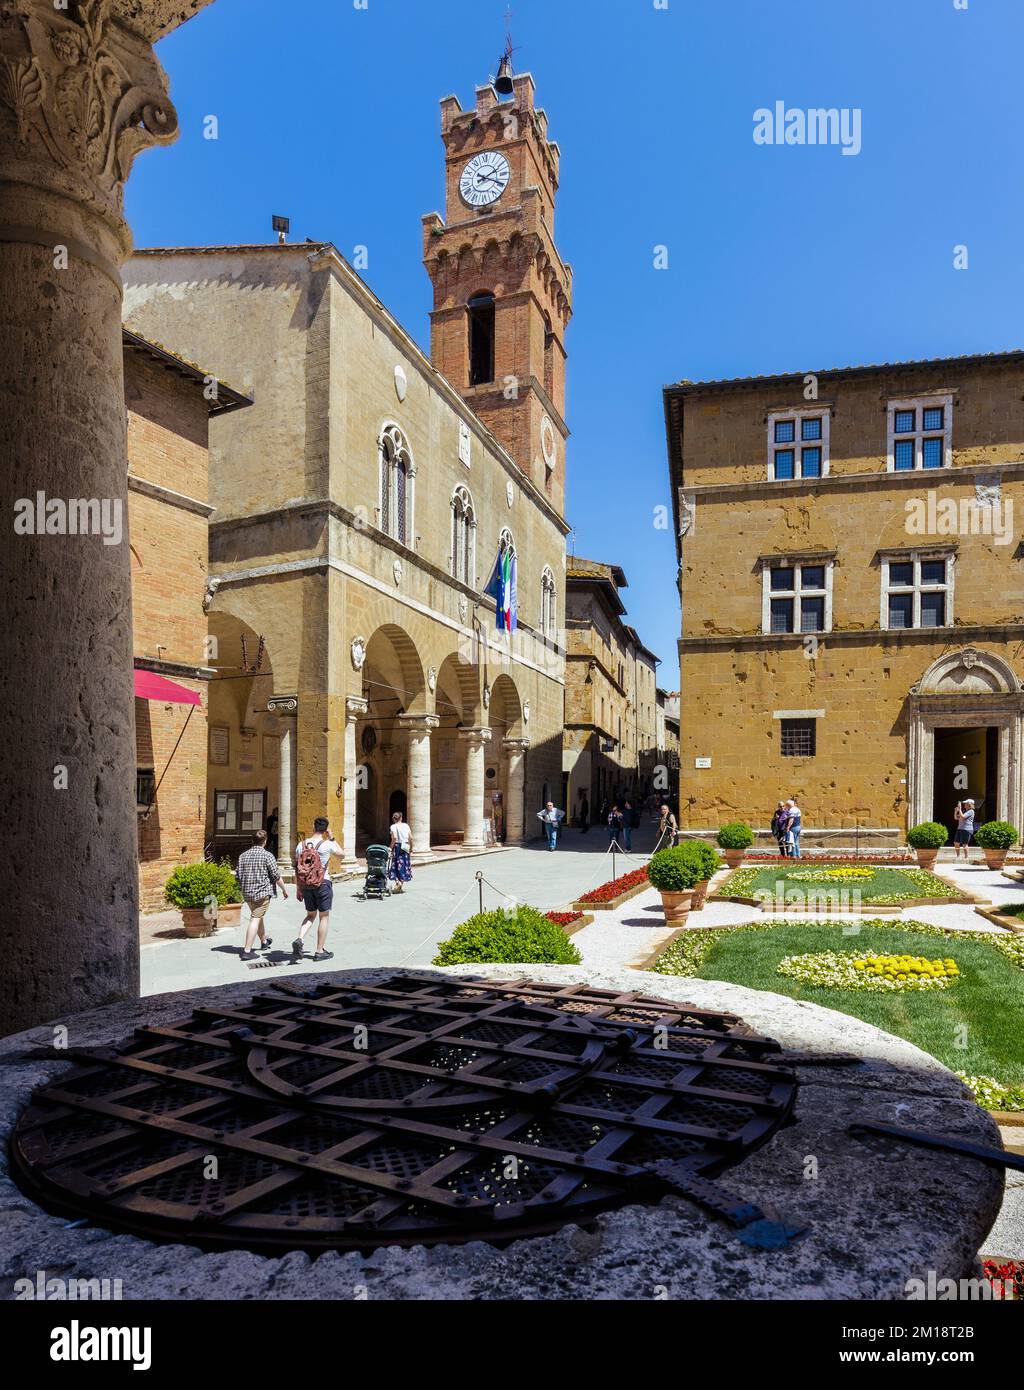 Pienza, province de Sienne, Toscane, Italie. Le Palazzo Comunale sur la Piazza Pio II La grille de fer au premier plan est la couverture d'un puits Renaissance. P Banque D'Images